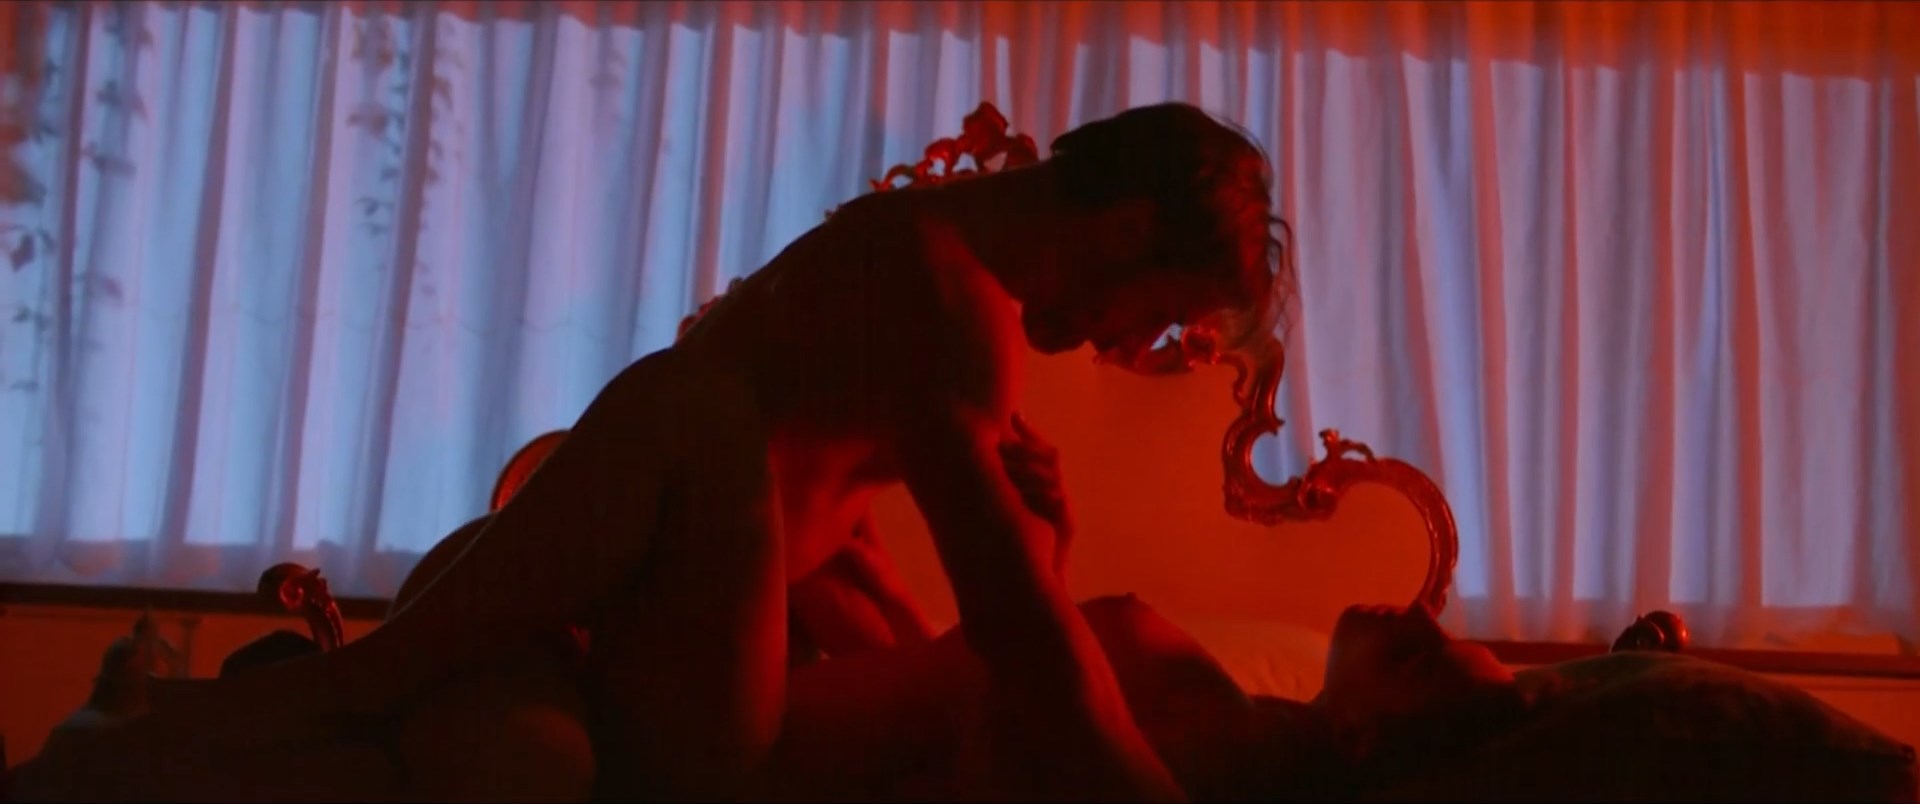 Mist Xxx Vidio - When the Mist Clears Nude Scenes Â» Celebs Nude Video - NudeCelebVideo.Net